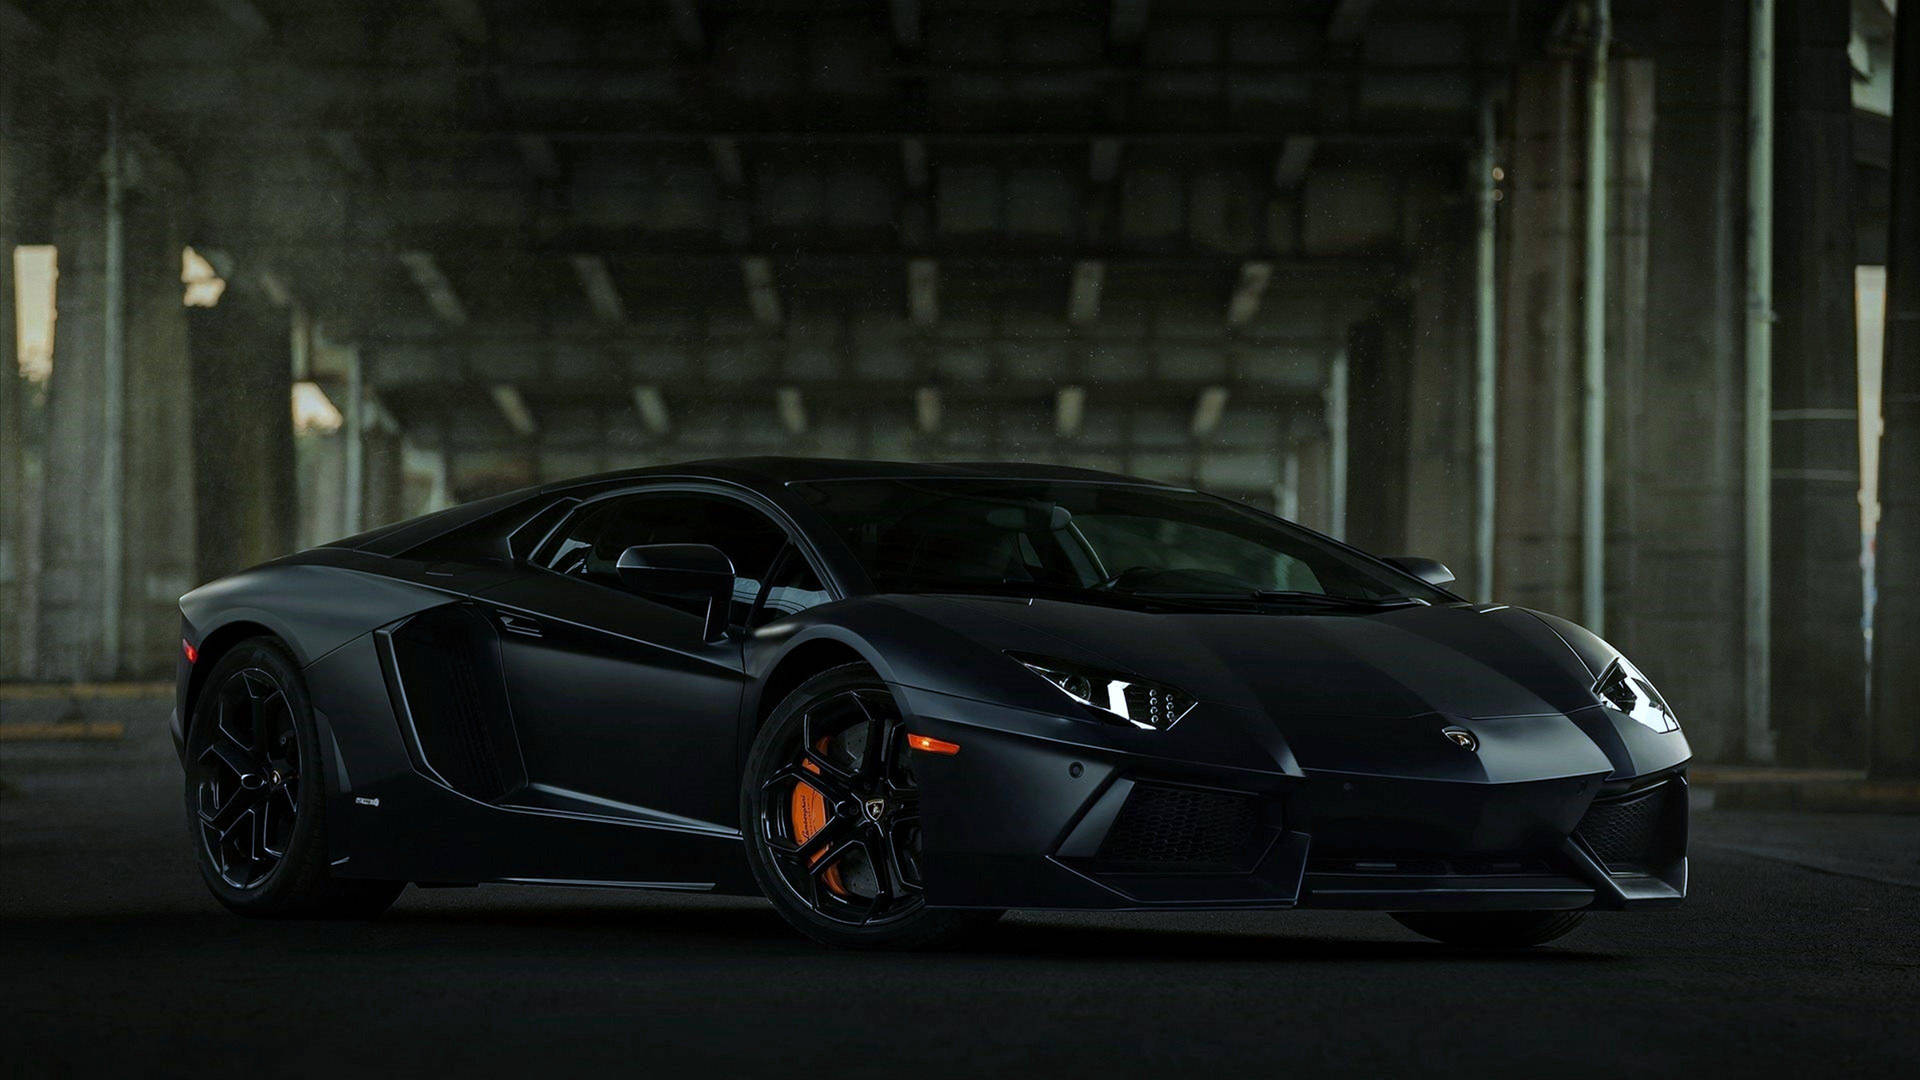 Cool Luxurious Cars: Black Lamborghini Car Wallpaper